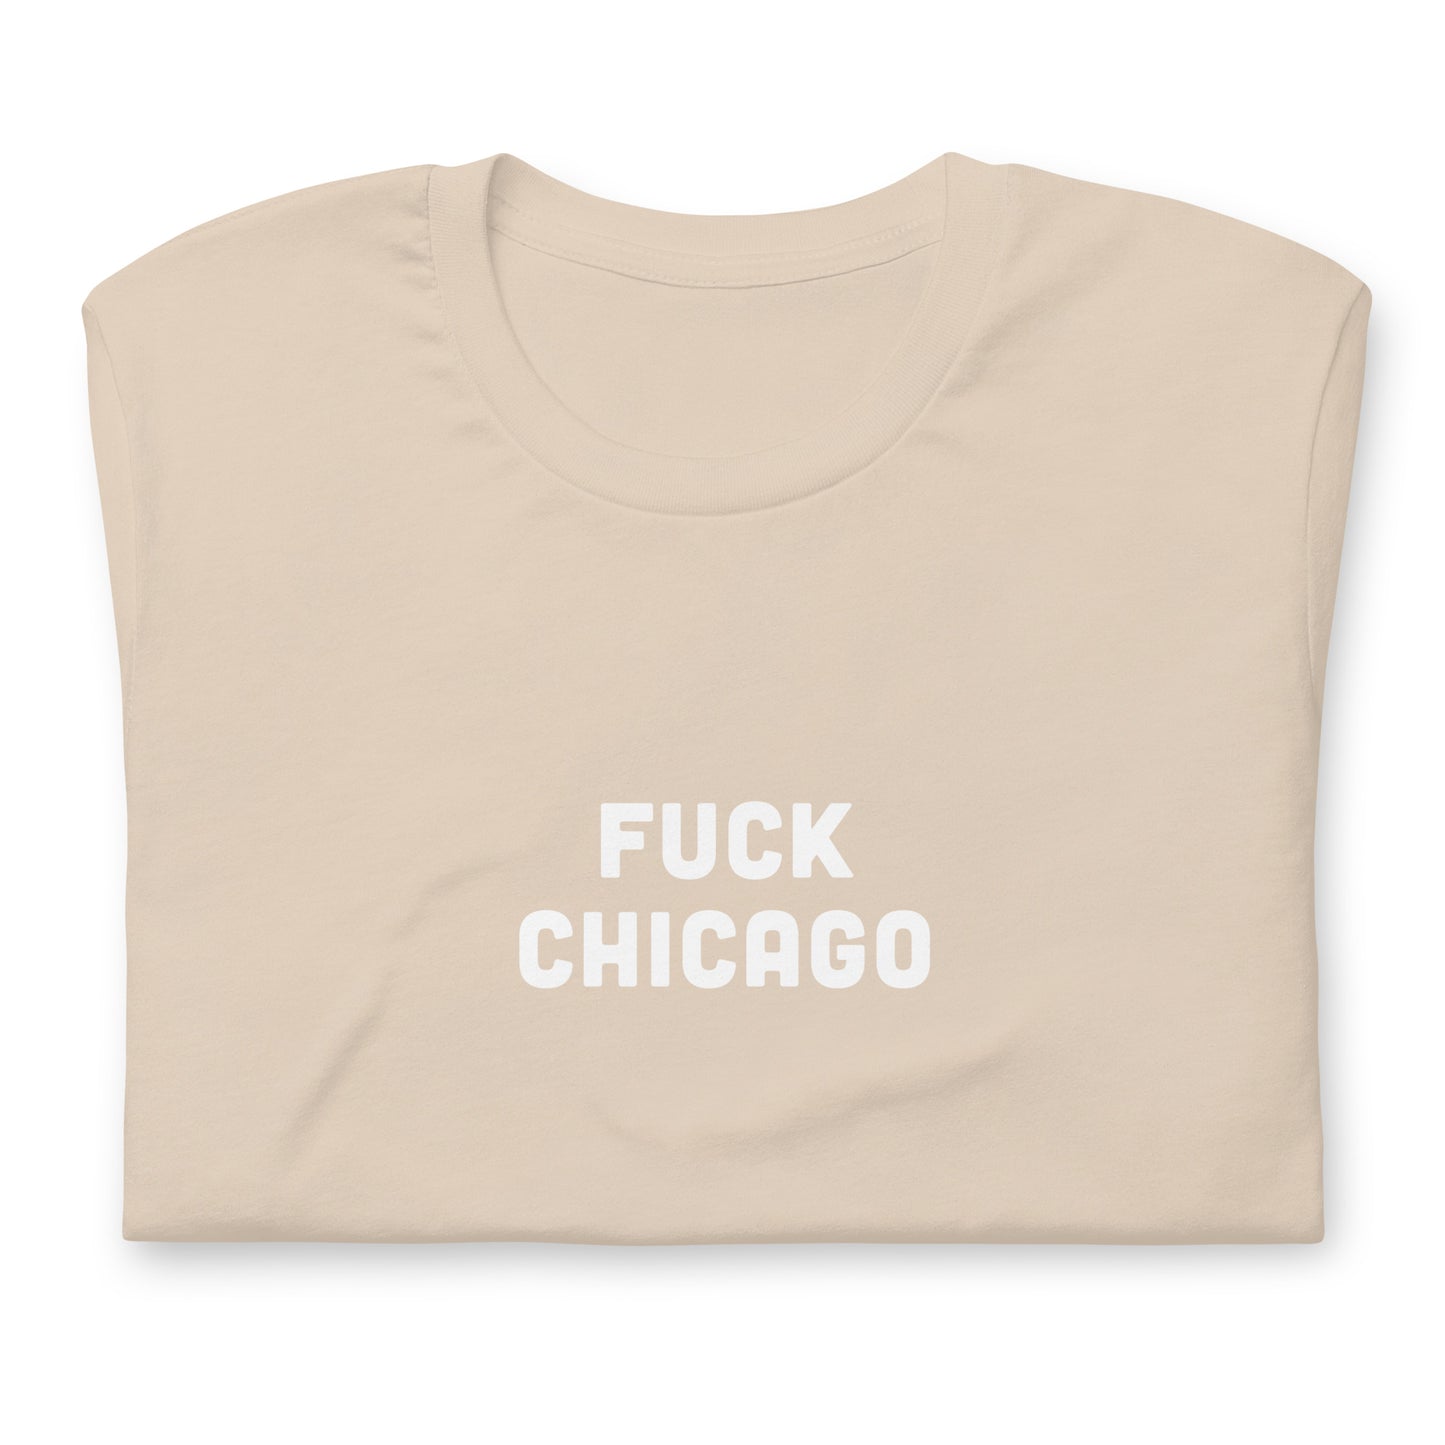 Fuck Chicago T-Shirt Size L Color Asphalt